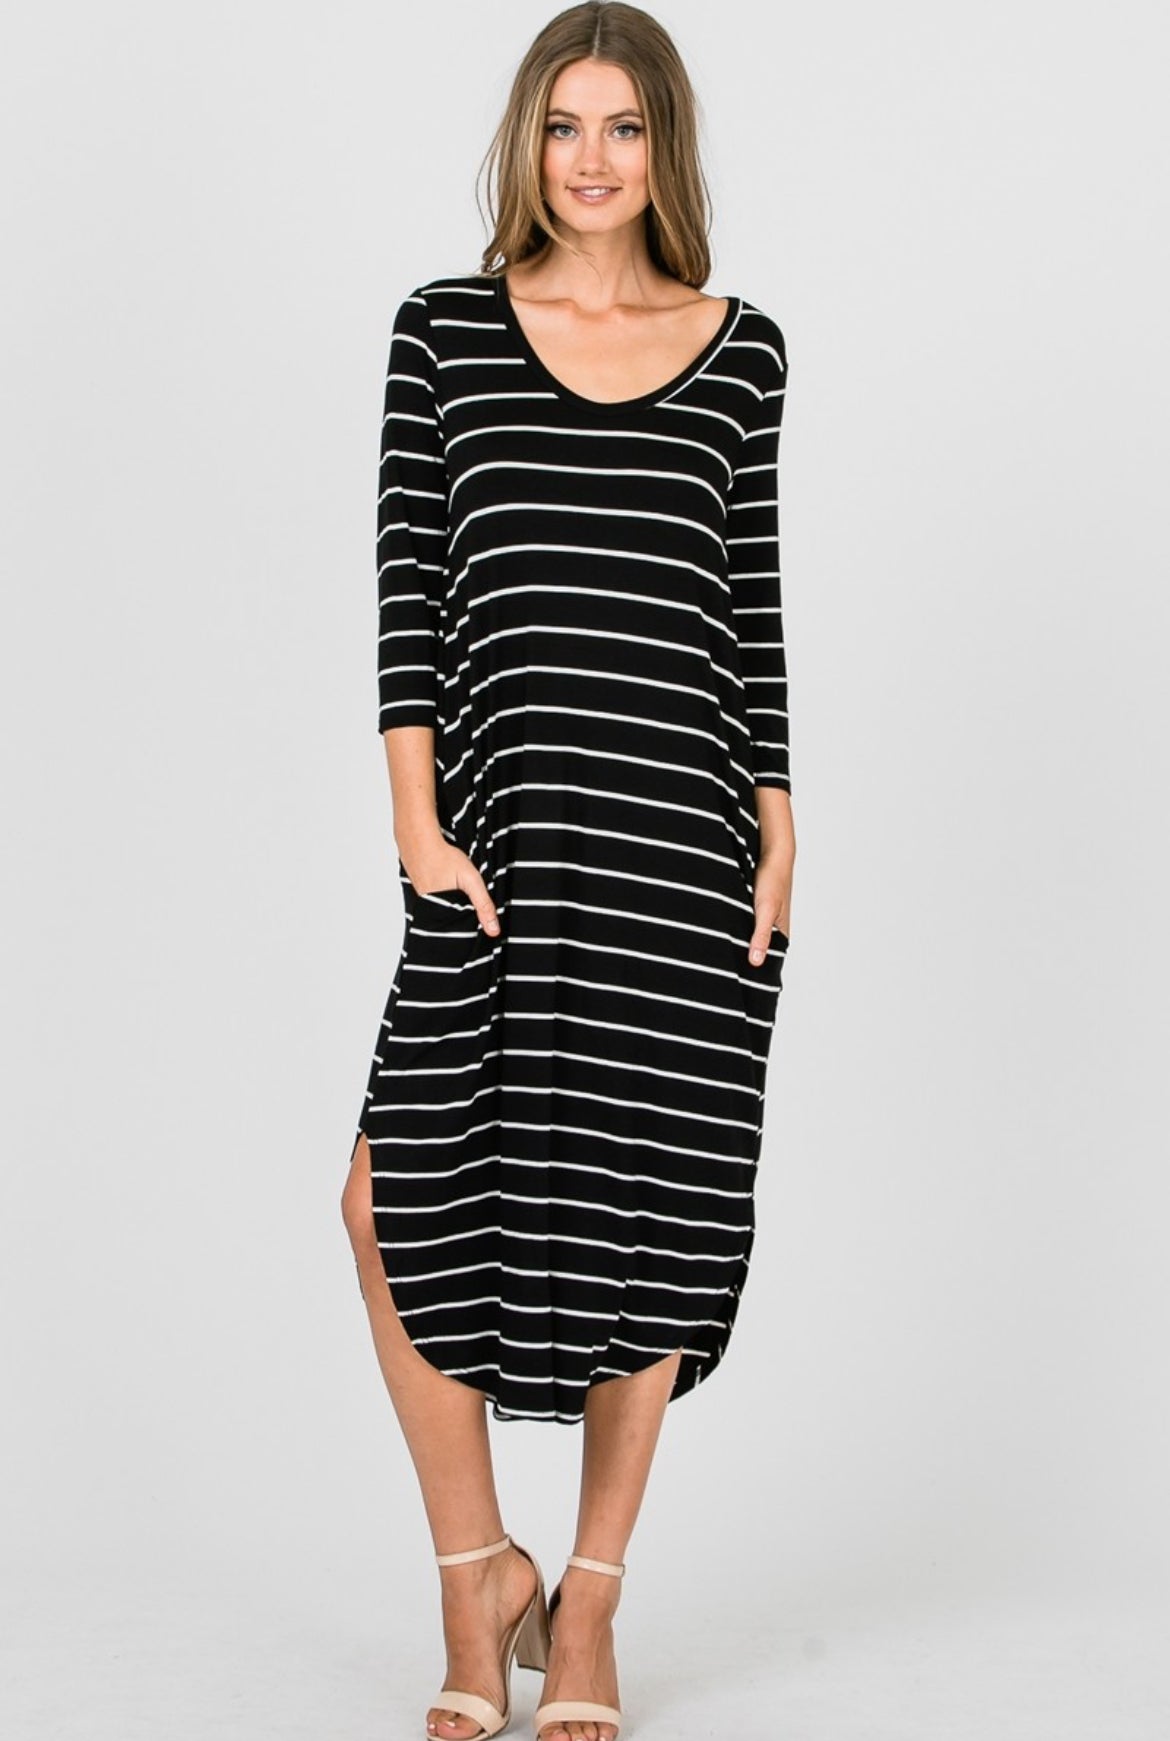 Black & White Striped Long Dress